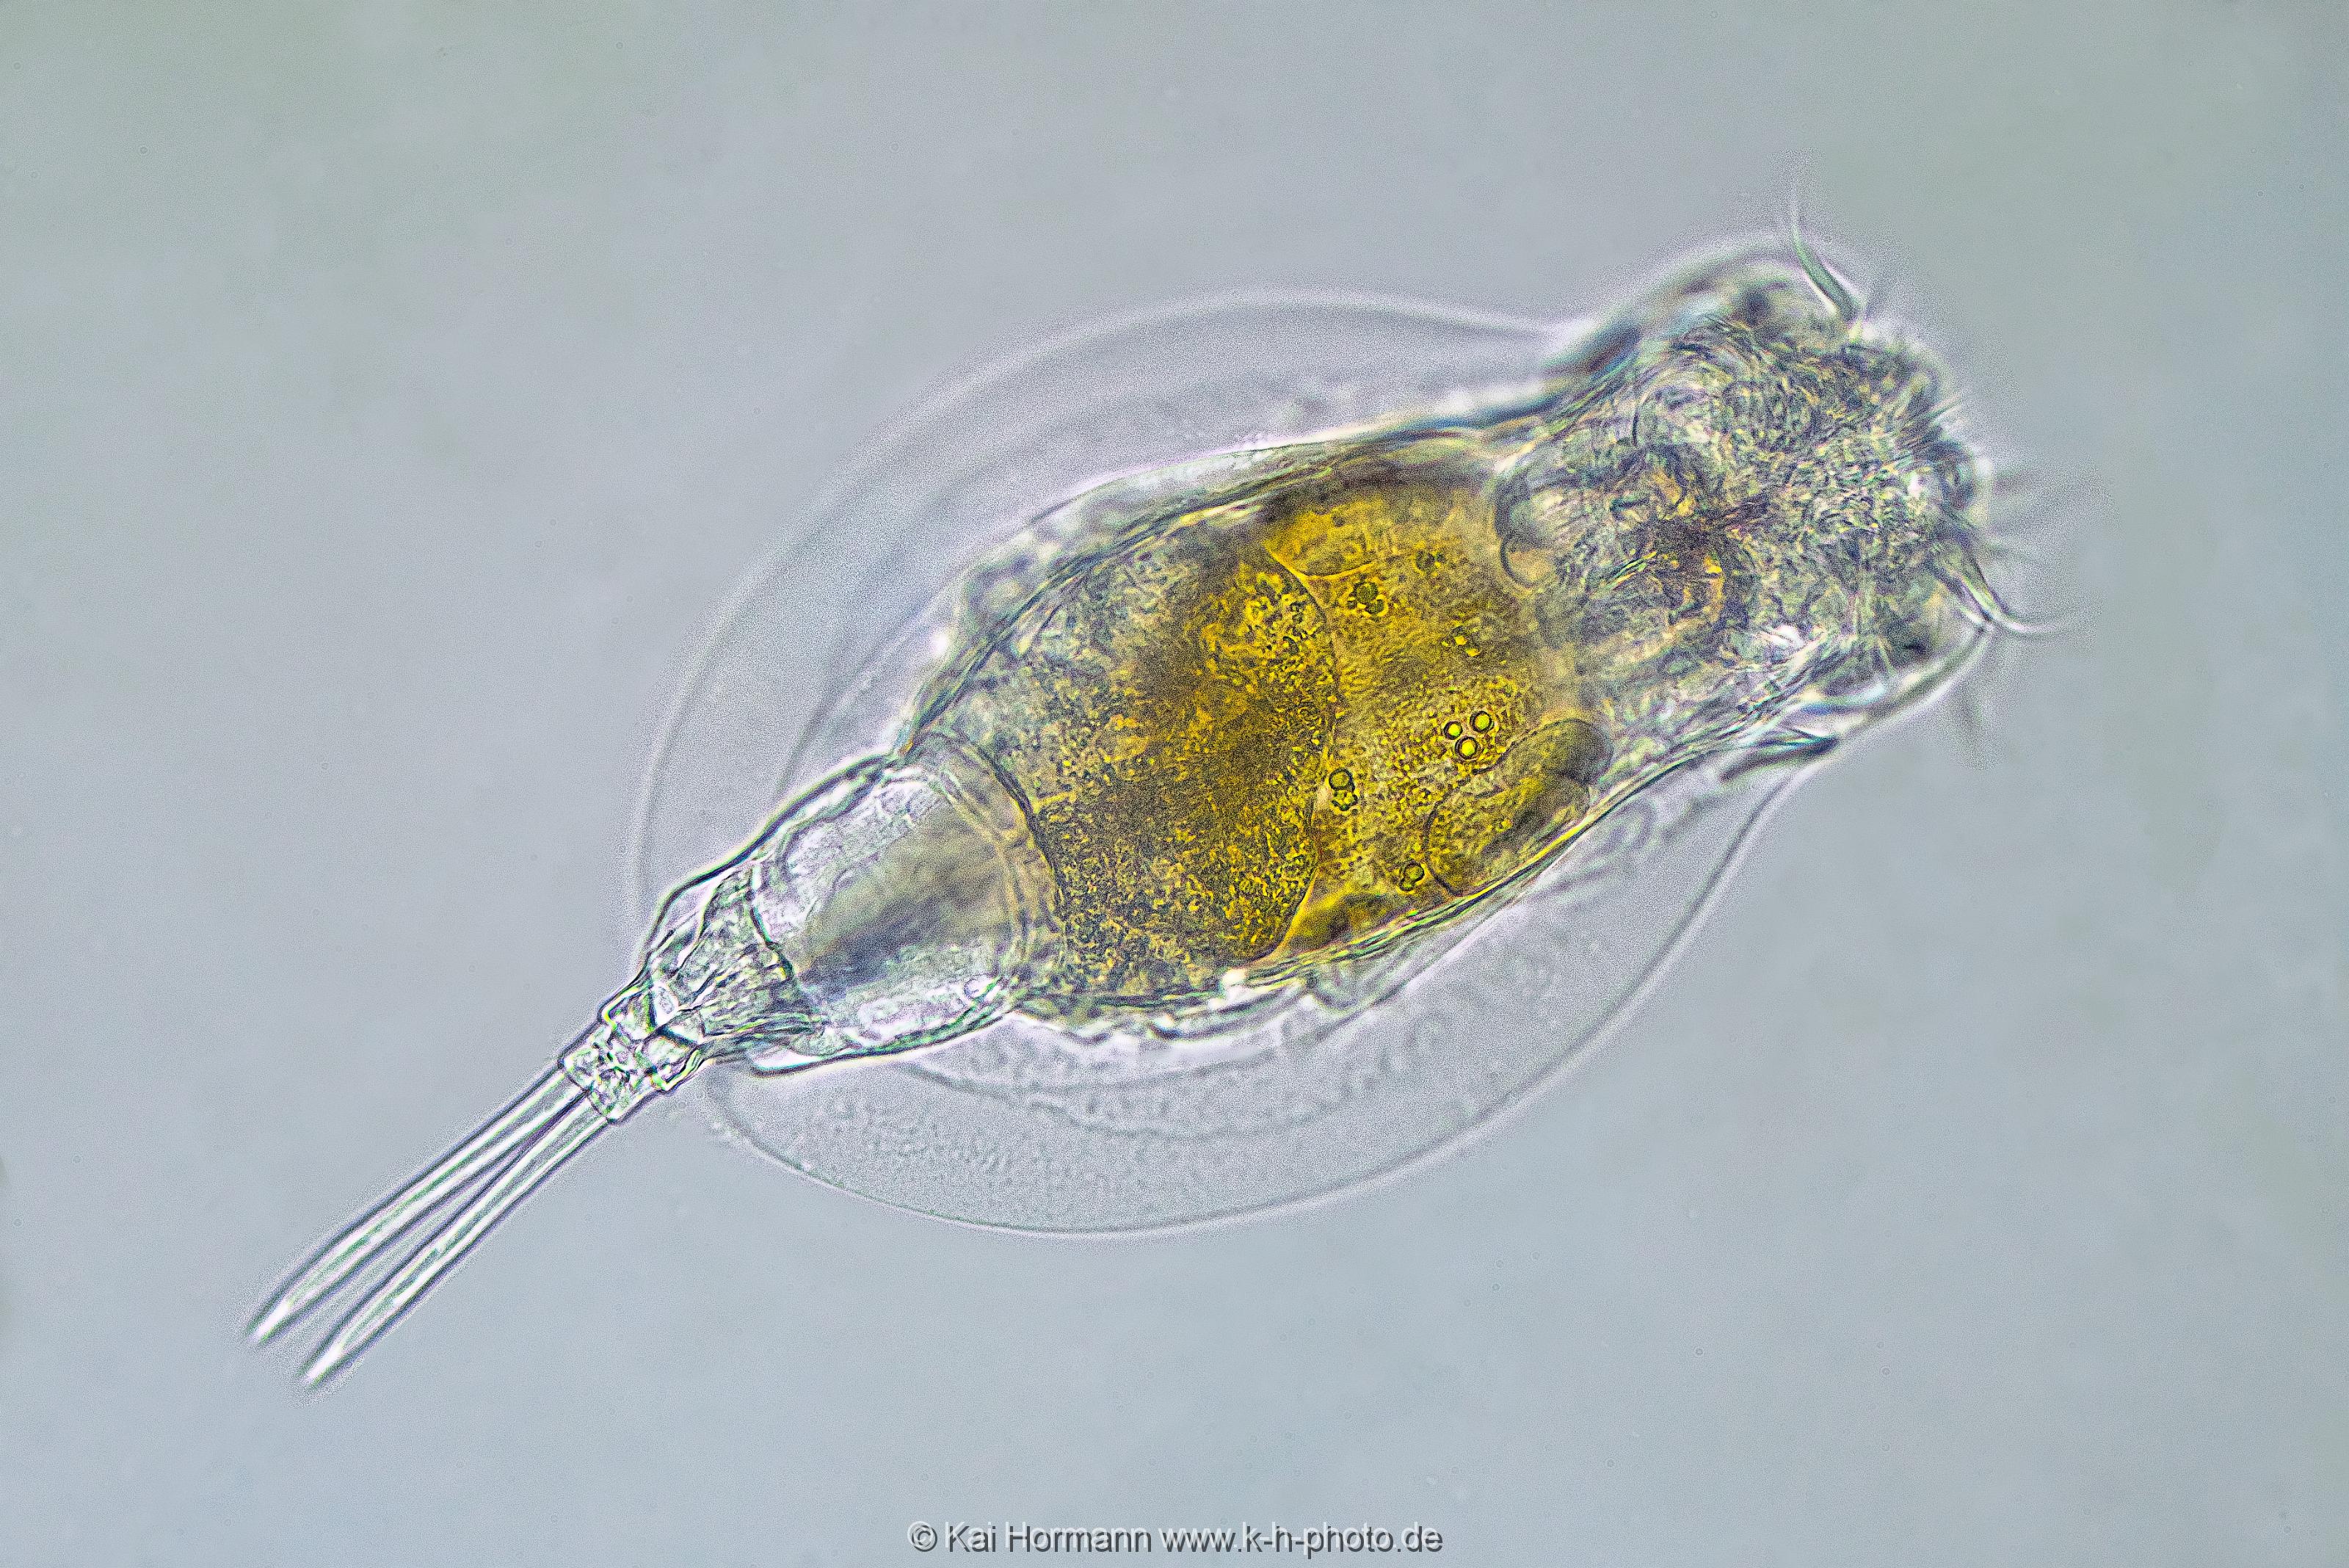 Mützen-Rädertier Lepadella patella. Mikrofotografie: Mikroskopische Aufnahmen von Einzellern, Algen und Kleinstlebewesen.